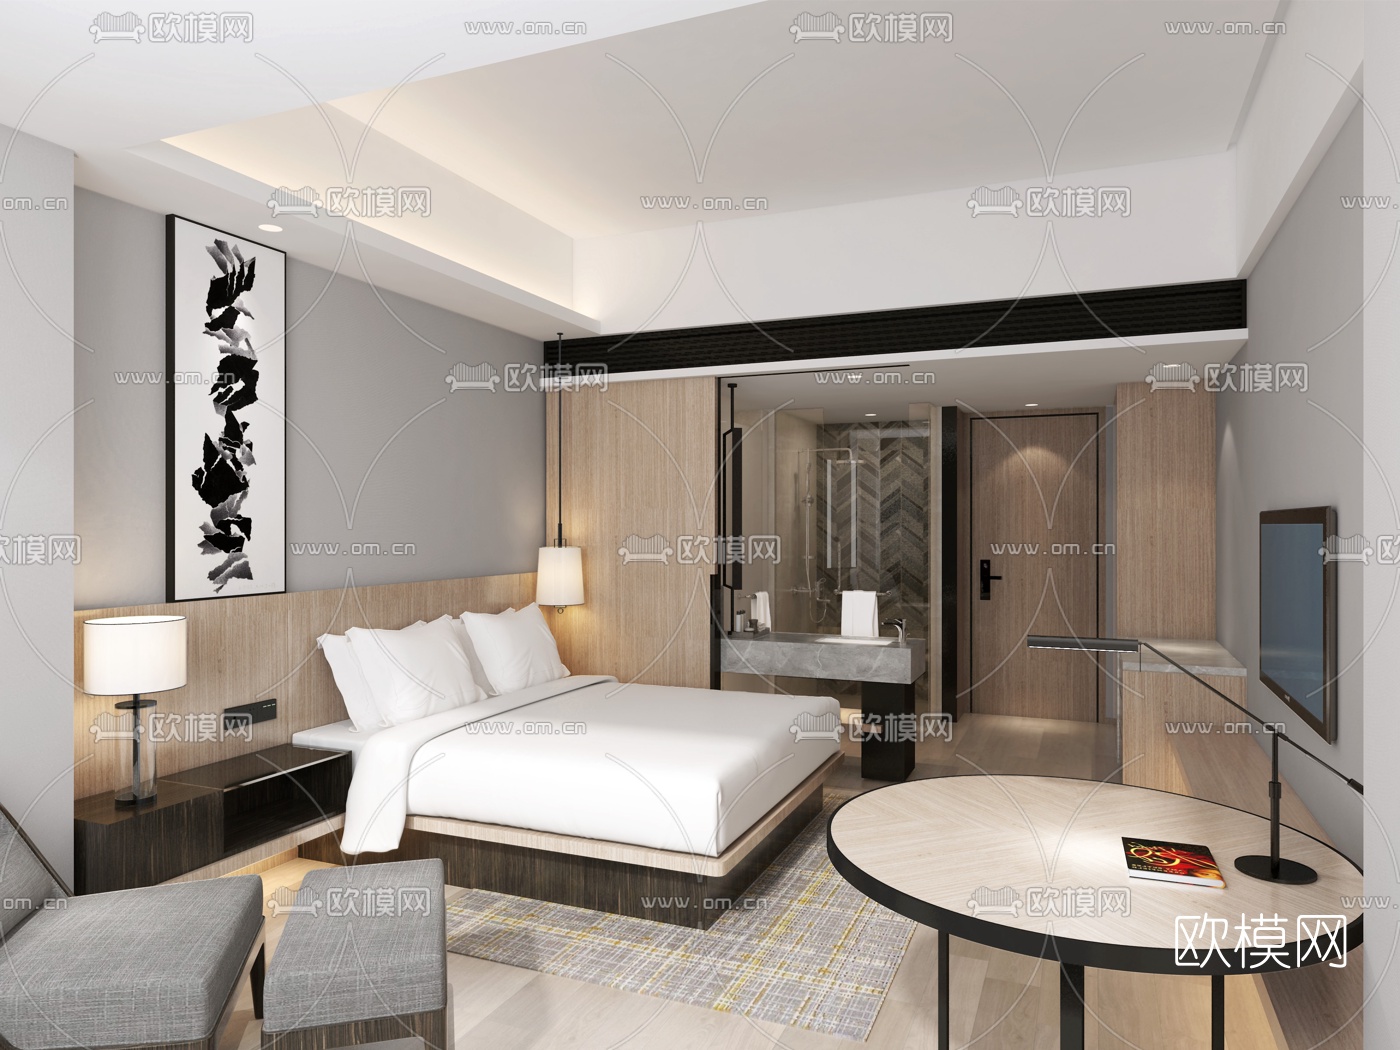 新中式酒店客房双人标准间-sketchup模型_sketchup模型库_建E室内设计网!